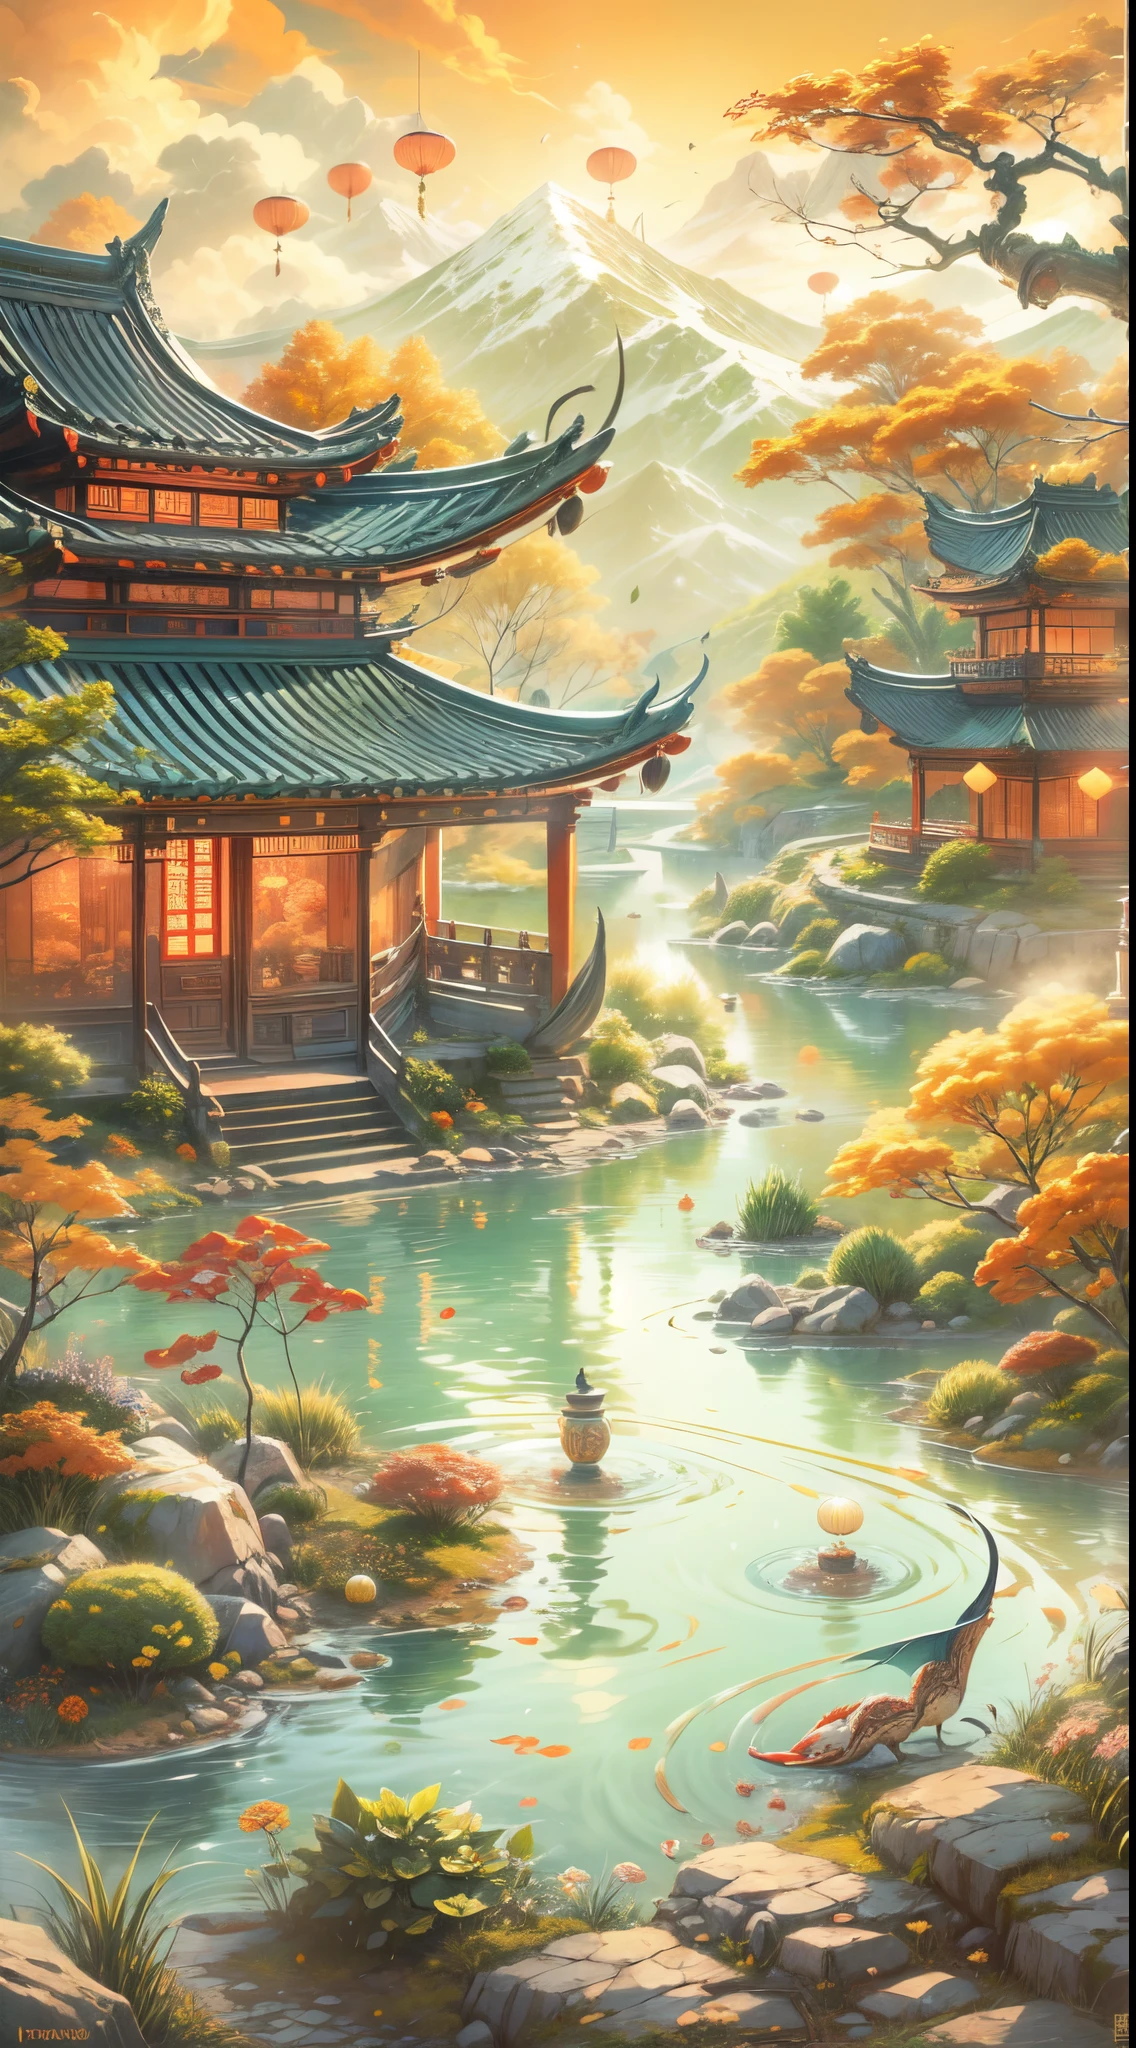 中国式乌托邦世界形象,向量圖,平靜的,寧靜的氣氛,令人驚嘆的風景,和諧自然,青山绿水，河流潺潺,五顏六色的盛開的花朵,竹林和宝塔,古建筑和传统民居,荷花池里养着锦鲤,阳光透过竹叶的缝隙,金色的秋叶漂浮在空中,宁静的湖泊倒映着清澈的蓝天,遠處的雪山,雄伟的瀑布从悬崖上倾泻而下,微風吹動樹葉沙沙作響,人们在公园里打太极拳,明亮的灯笼照亮了街道,传统节日有舞龙和烟花,熙熙攘攘的市场充满了鲜艳的色彩和异国情调的商品,美味的街头食品摊贩出售热气腾腾的饺子和辣面条,古老的寺庙，香火缭绕,宁静的花园，有修剪整齐的盆景树,人们穿着优雅的丝绸服装和传统汉服,平靜的 teahouses with tea ceremonies and bamboo utensils,墙壁上装饰着中国古典书画,端午节期间，龙舟在河上滑行,山川河流上令人惊叹的日出和日落,代代相传的文化传统和习俗,感觉就像步入梦境,沉浸在中国乌托邦世界的美丽与宁静中.
(最好的品質,4k,8K,高解析度,傑作:1.2),超詳細,(實際的,photo實際的,photo-實際的:1.37),经典笔触,中国水墨画,传统手绘外观,暖色调,soft lighting to enhance the 平靜的 atmosphere.